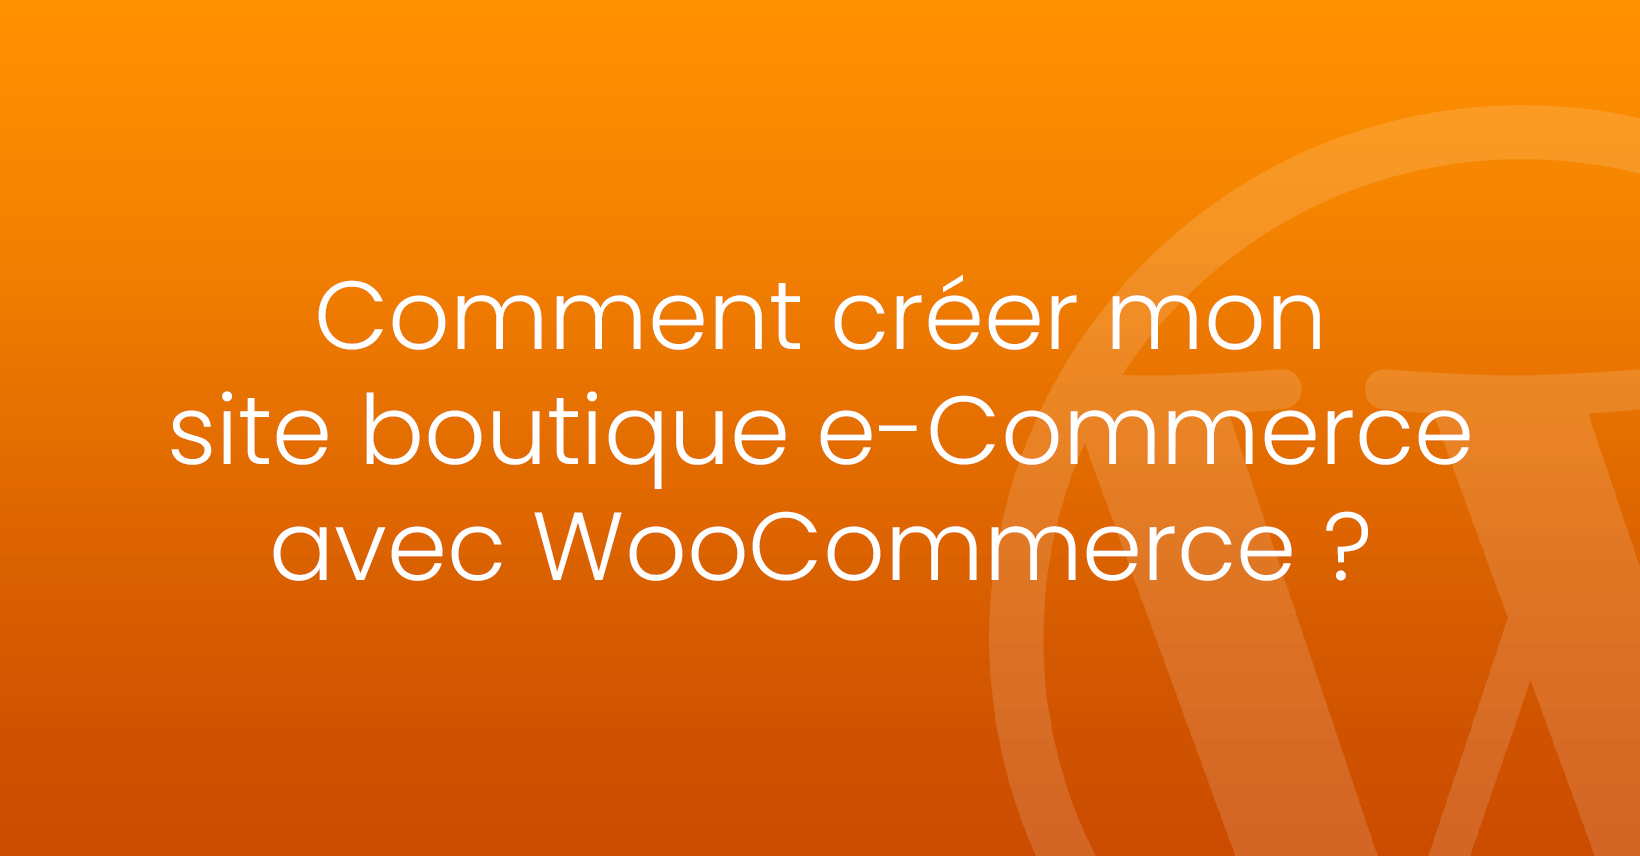 Comment créer mon site boutique e-Commerce avec WooCommerce ?